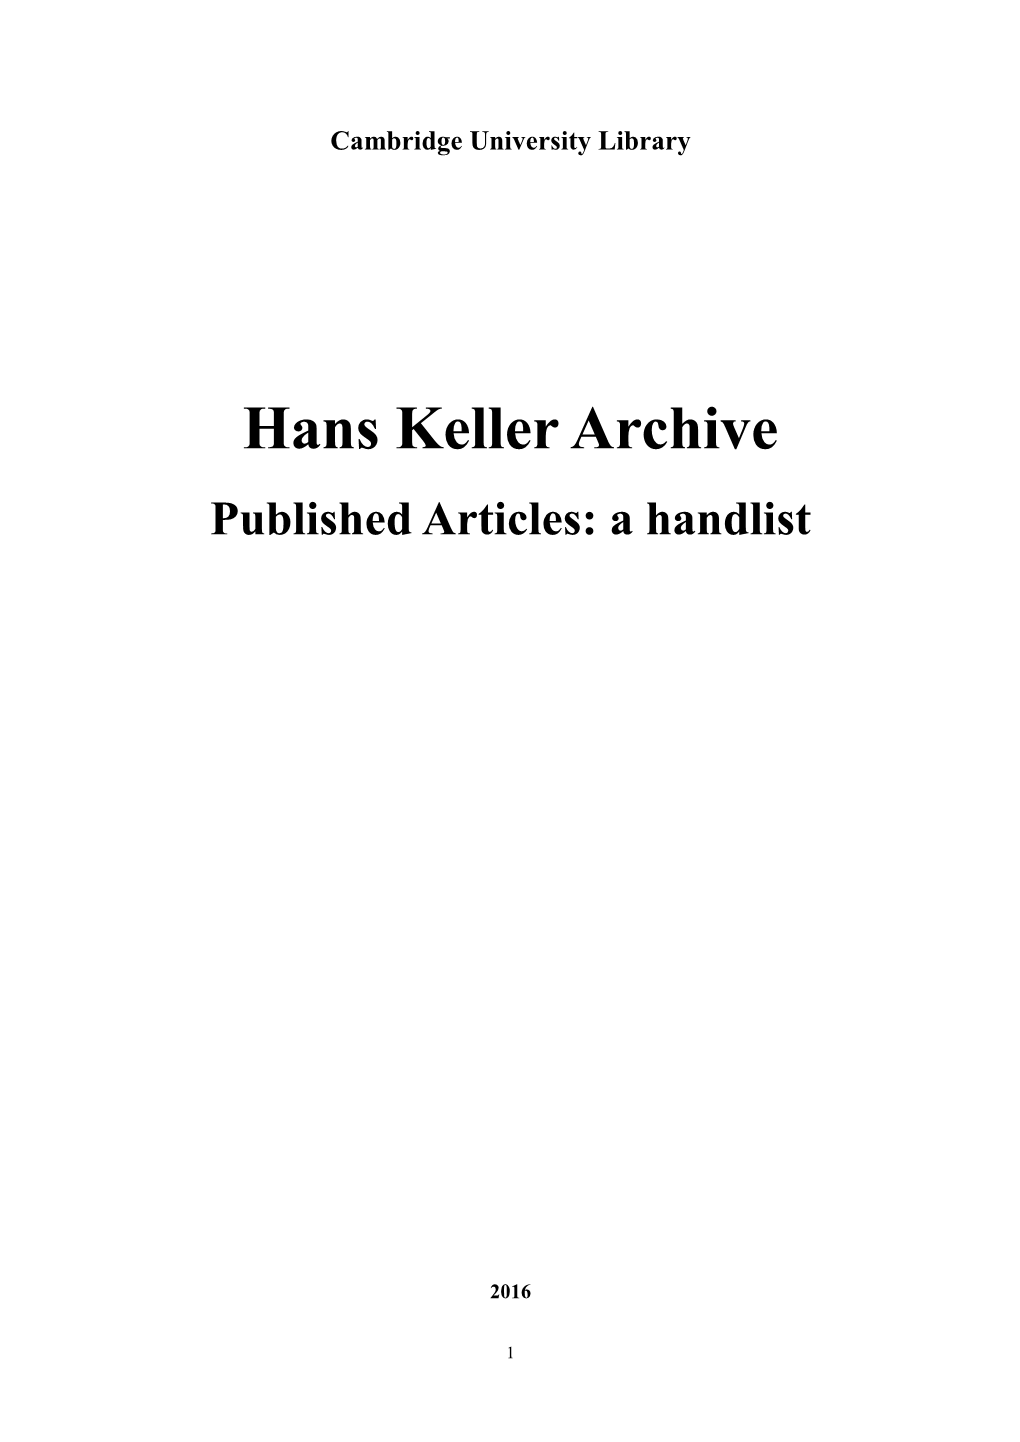 Hans Keller Archive Published Articles: a Handlist